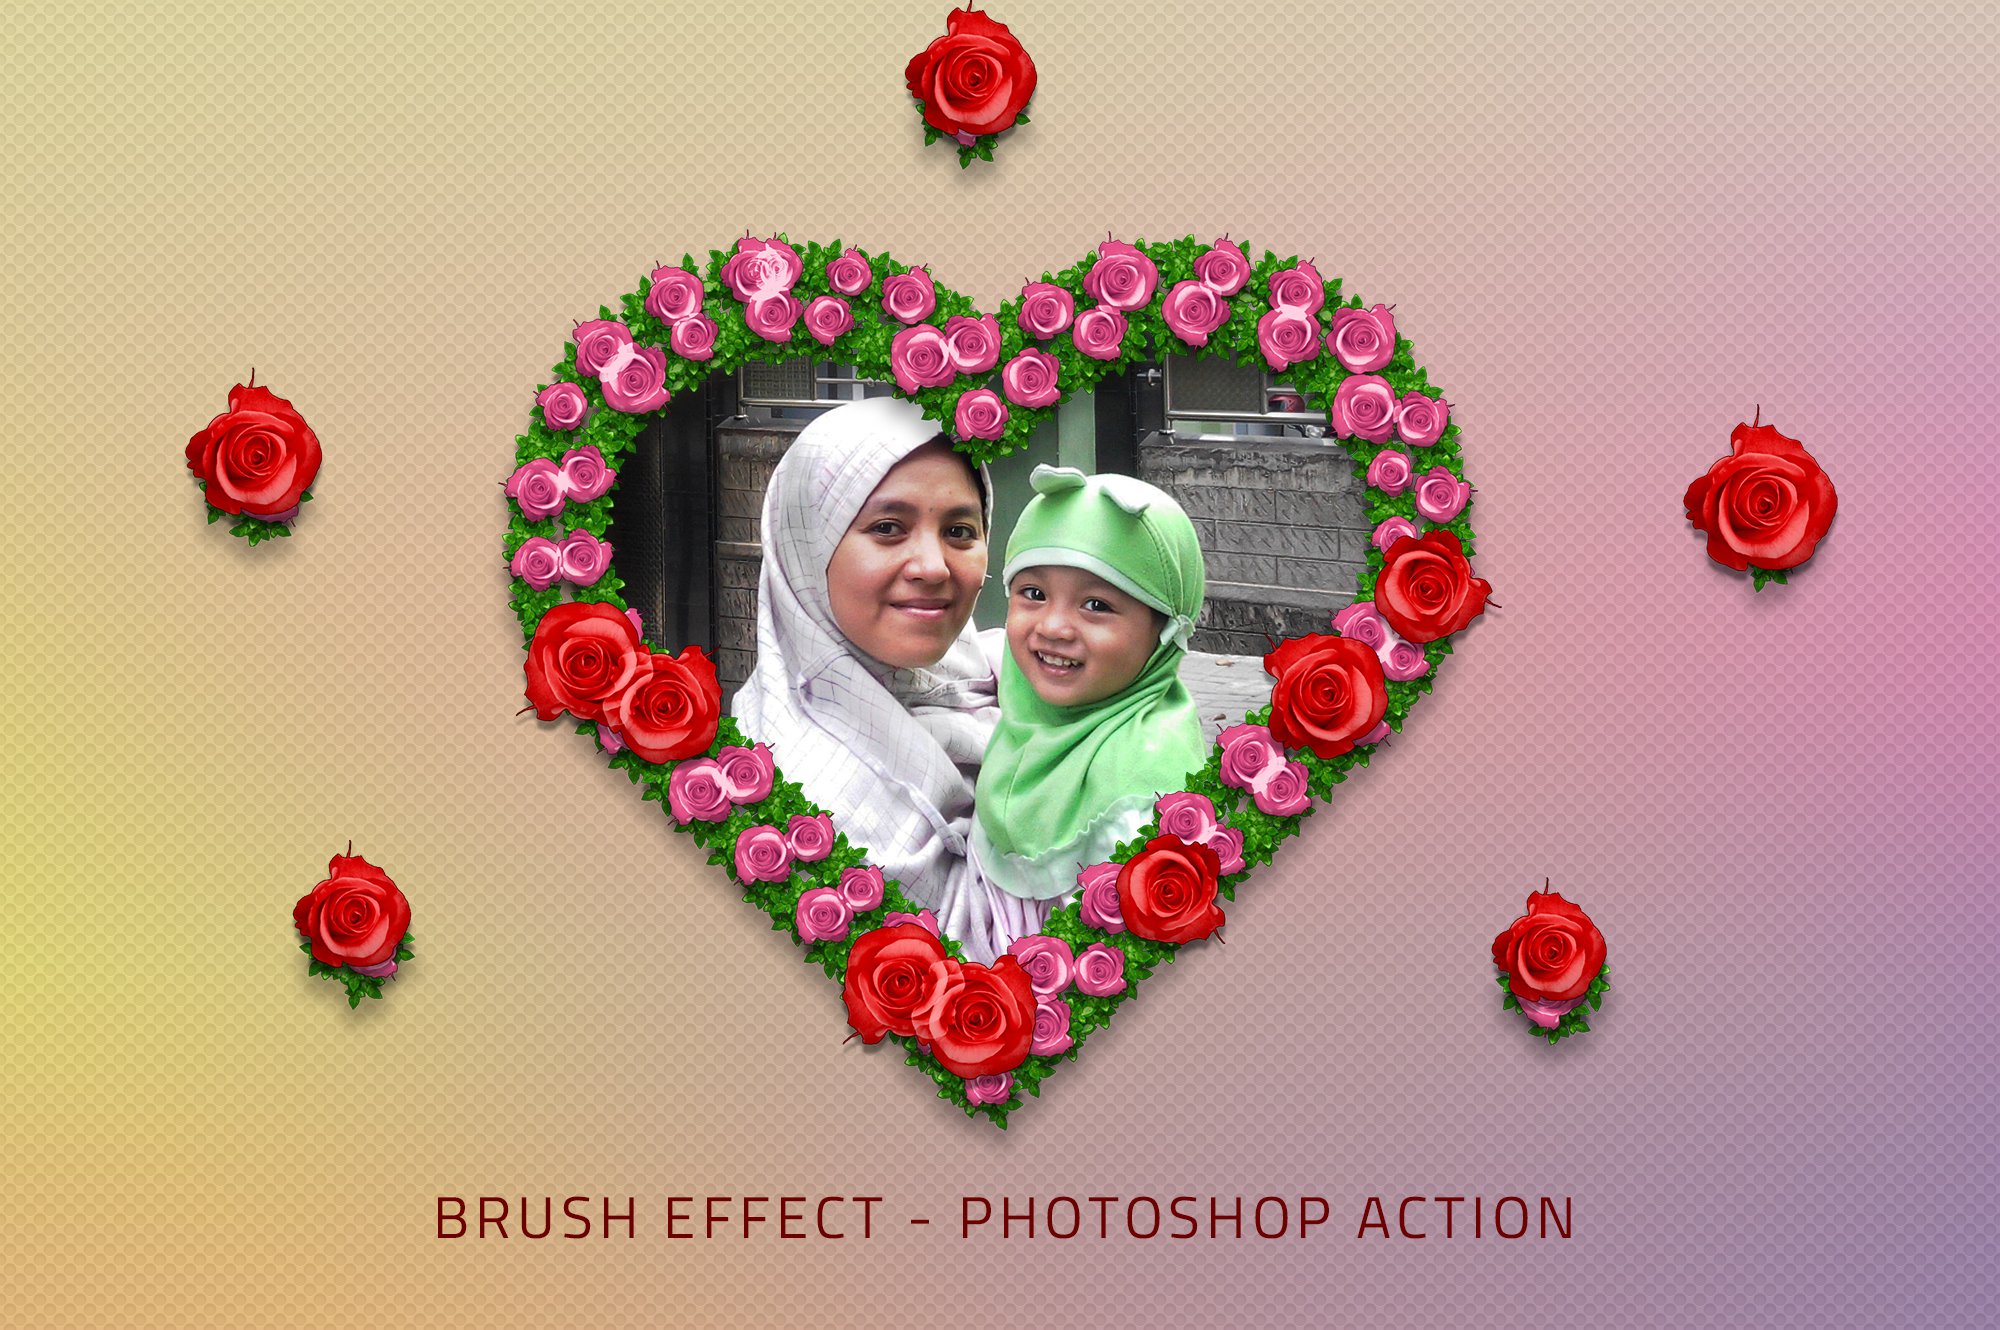 Rose Brush Photo Effectcover image.